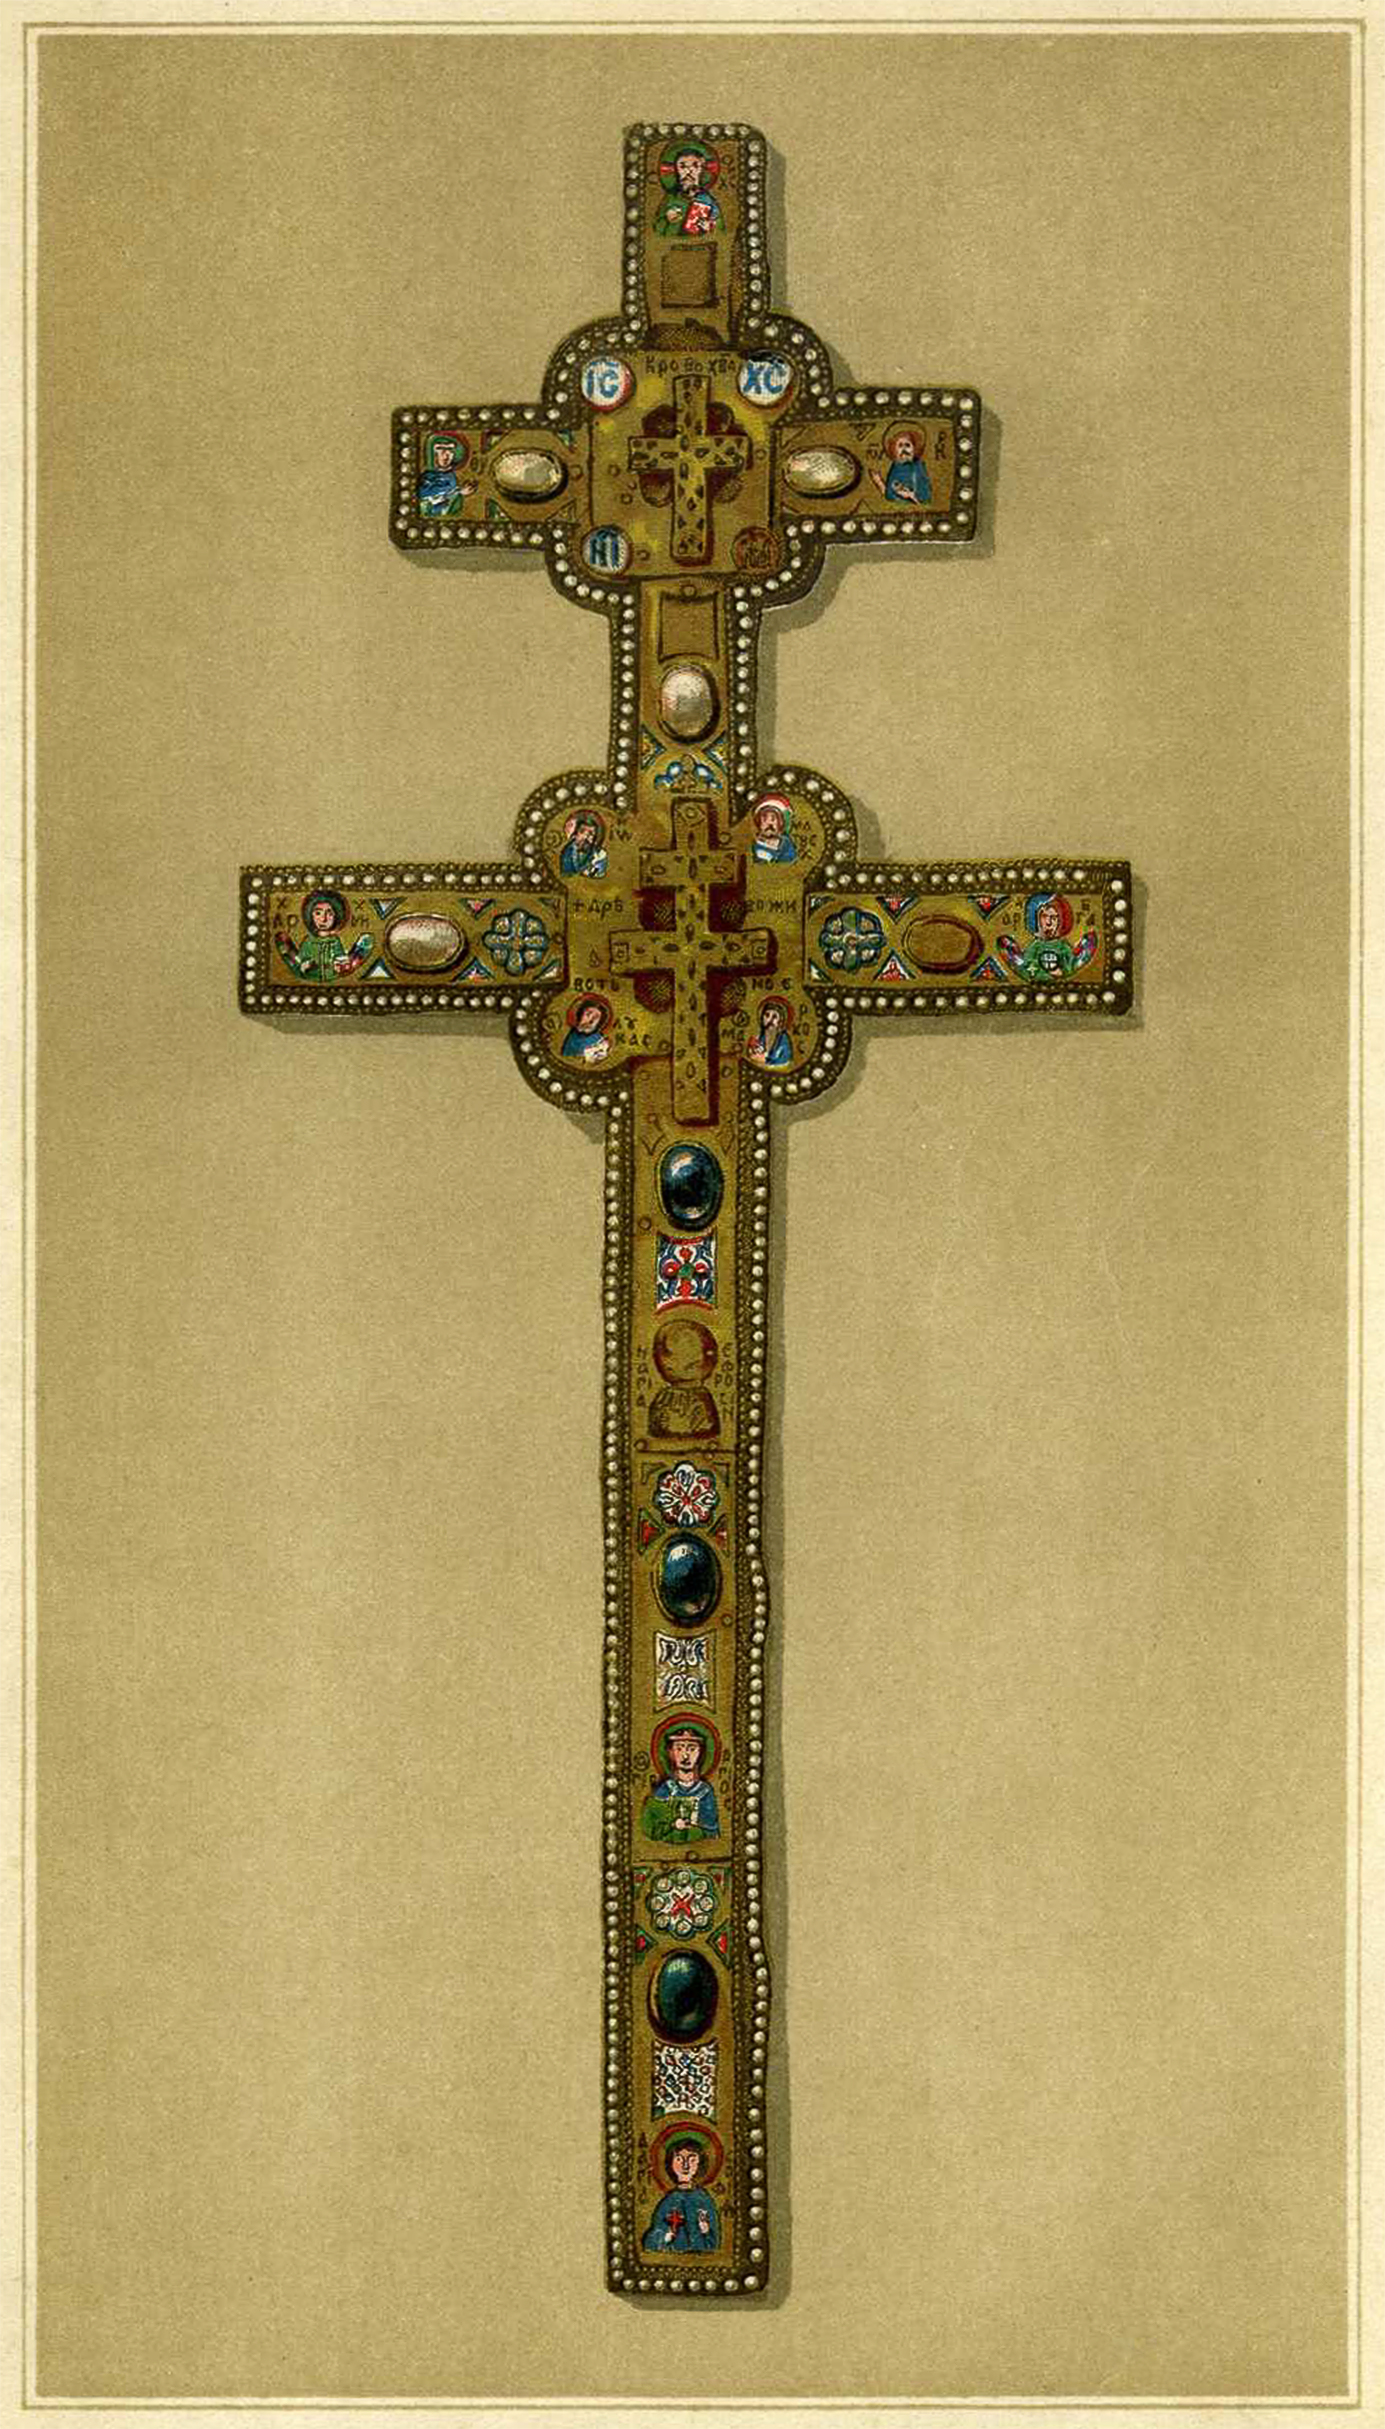 Kryž Eŭfrasińni Połackaj. Крыж Эўфрасіньні Полацкай (1890)